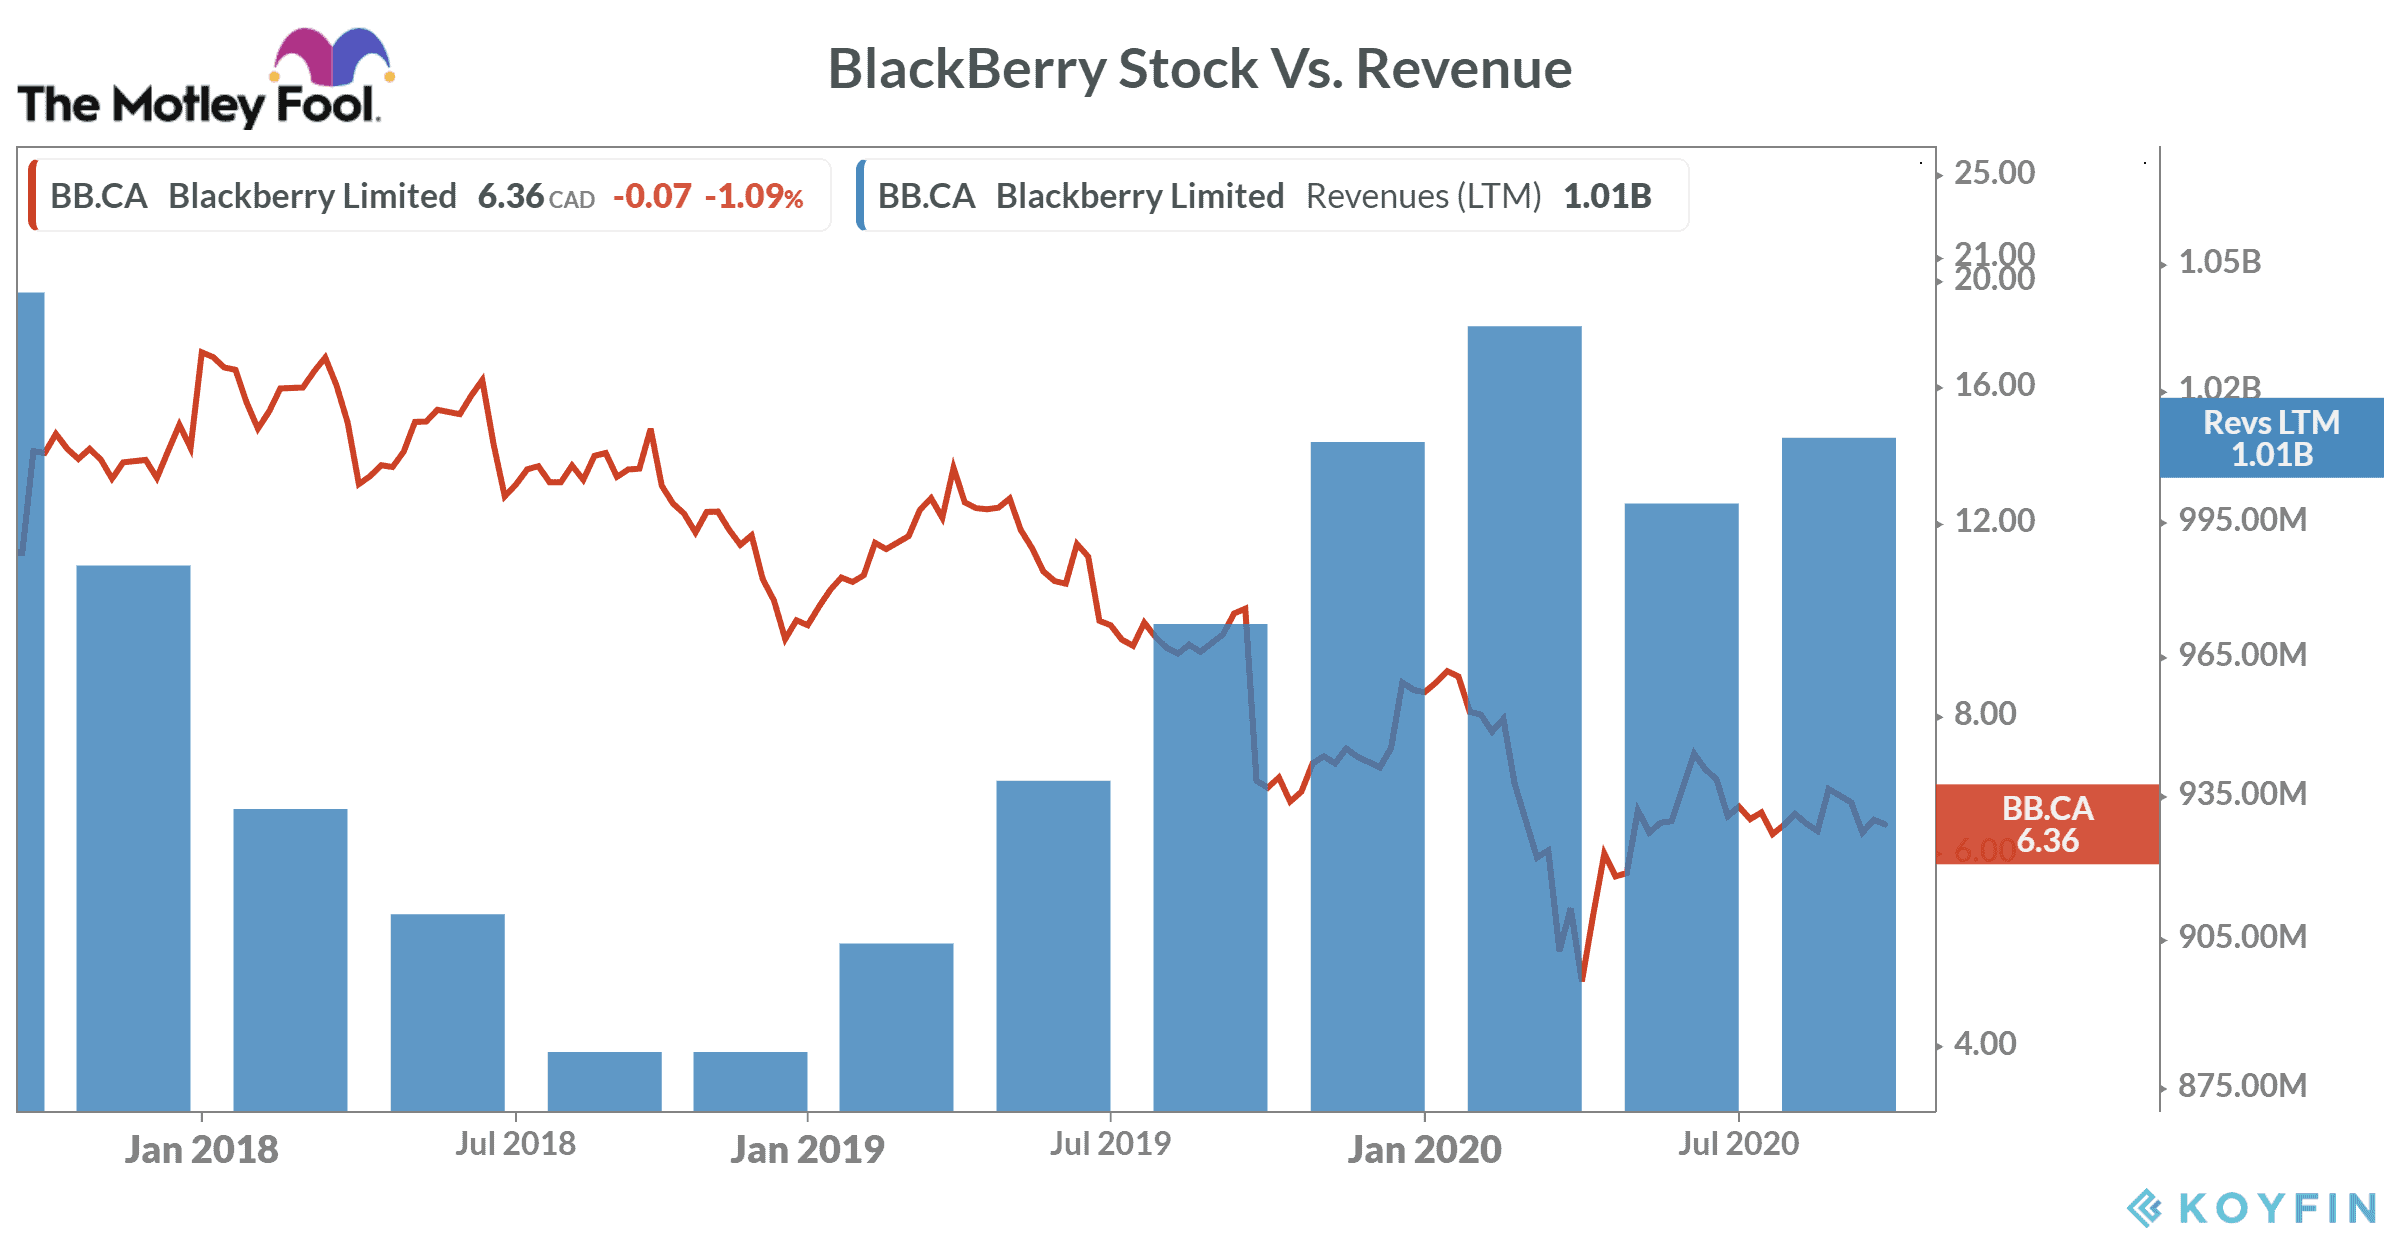 BlackBerry Stock Vs. Revenue